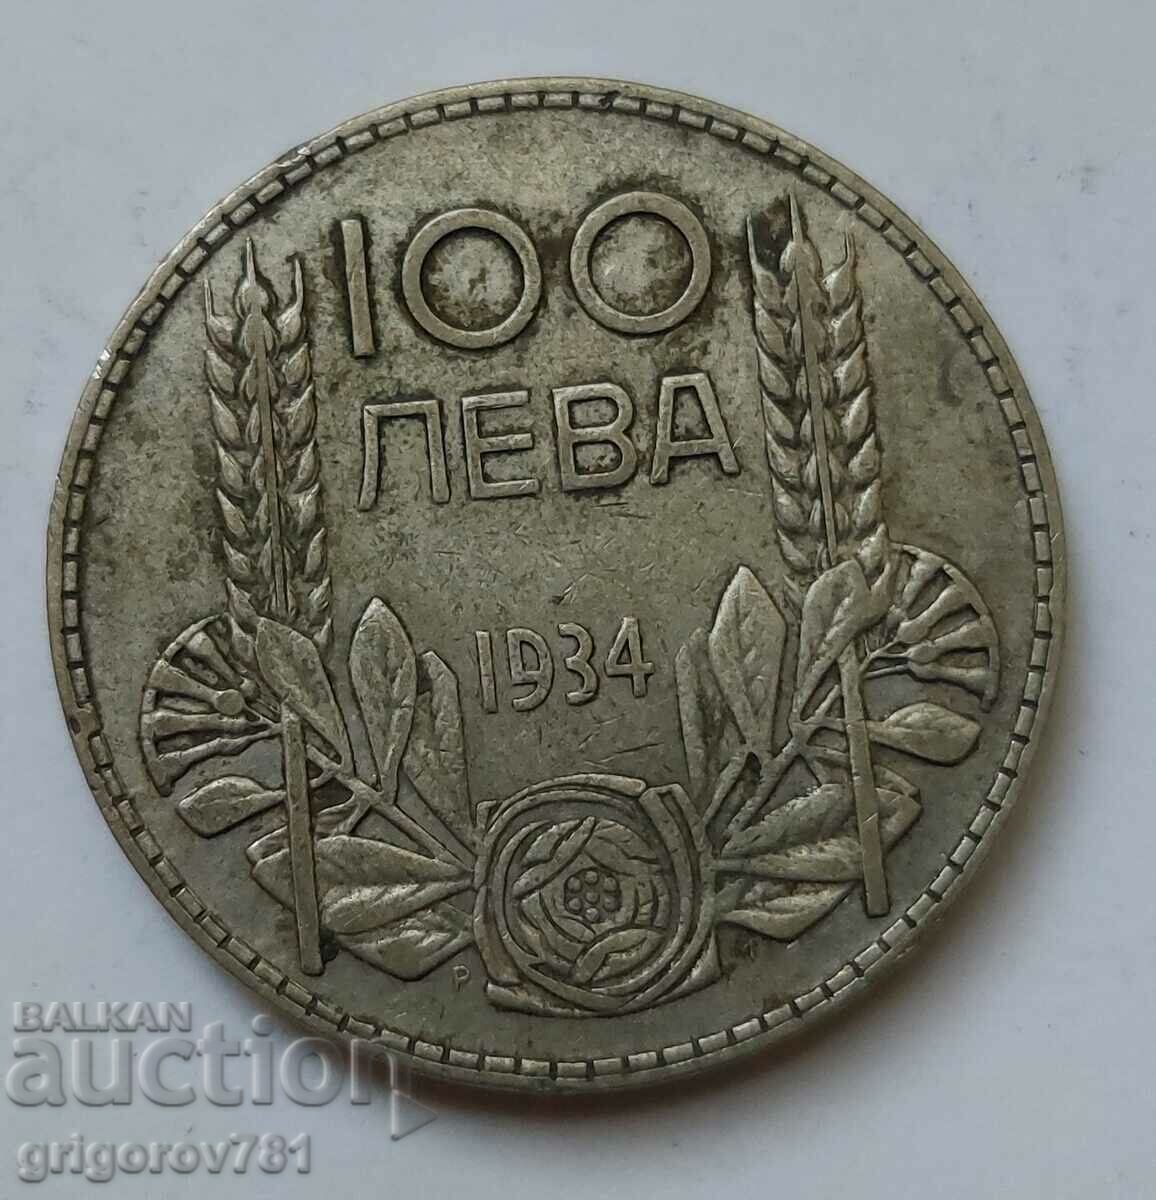 100 leva silver Bulgaria 1934 - silver coin #50